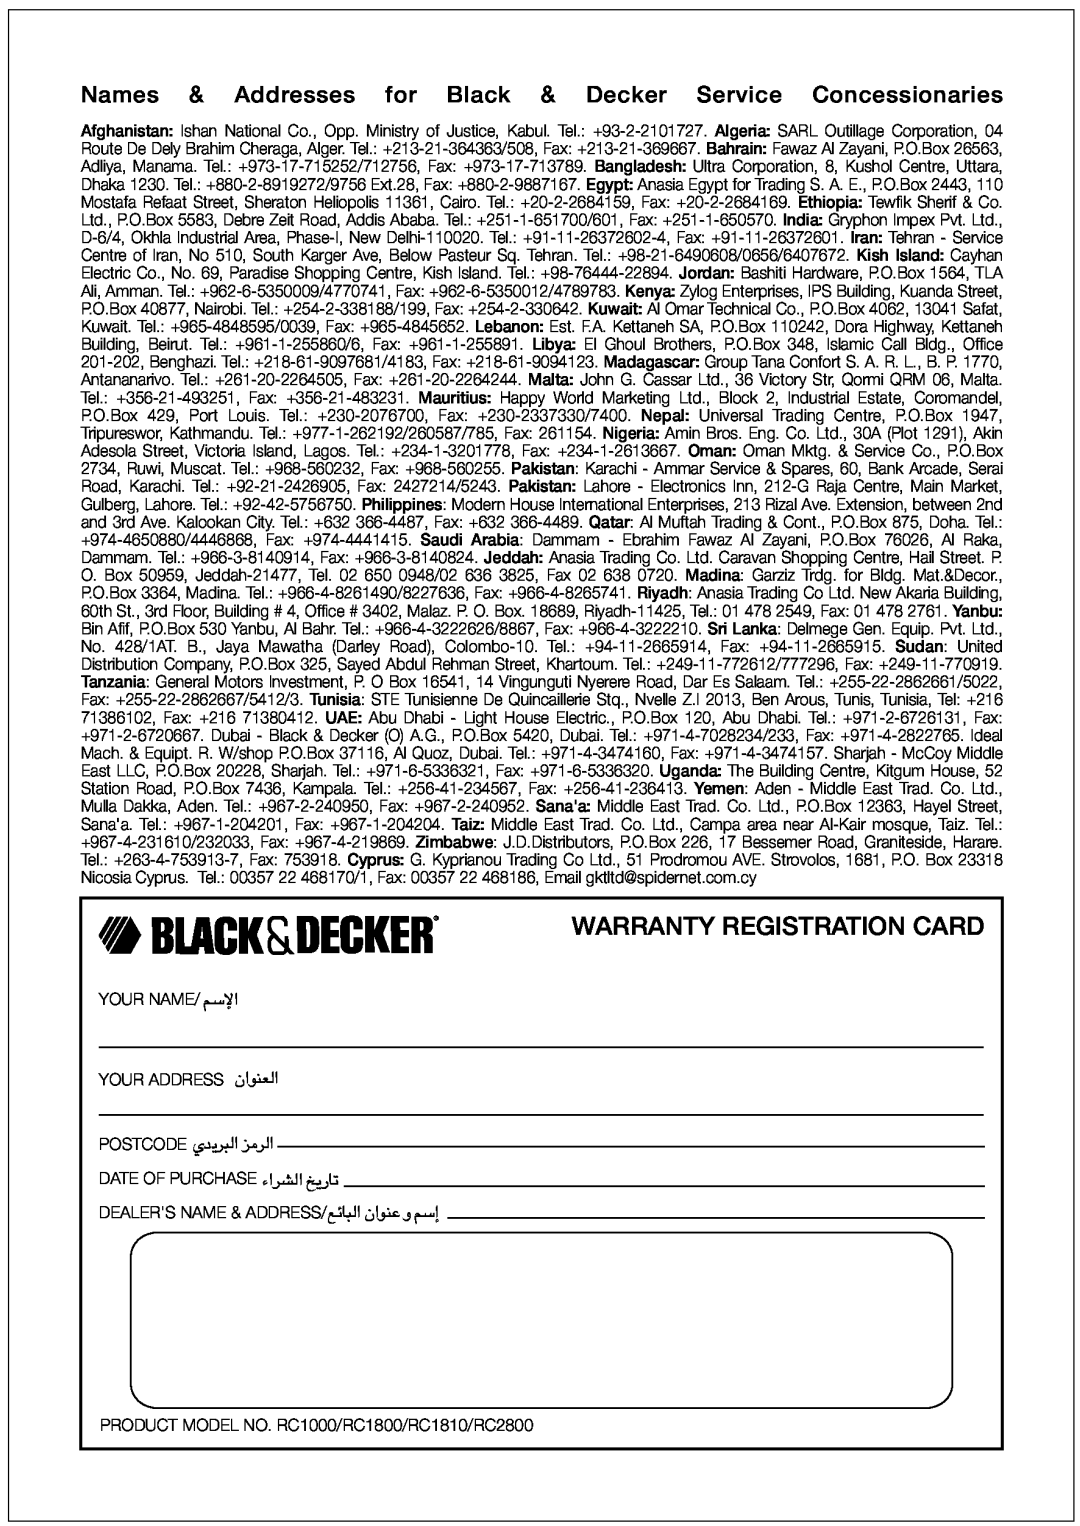 Black & Decker RC1000 manual Warranty Registration Card, Names & Addresses for Black & Decker Service Concessionaries, «ùßr 